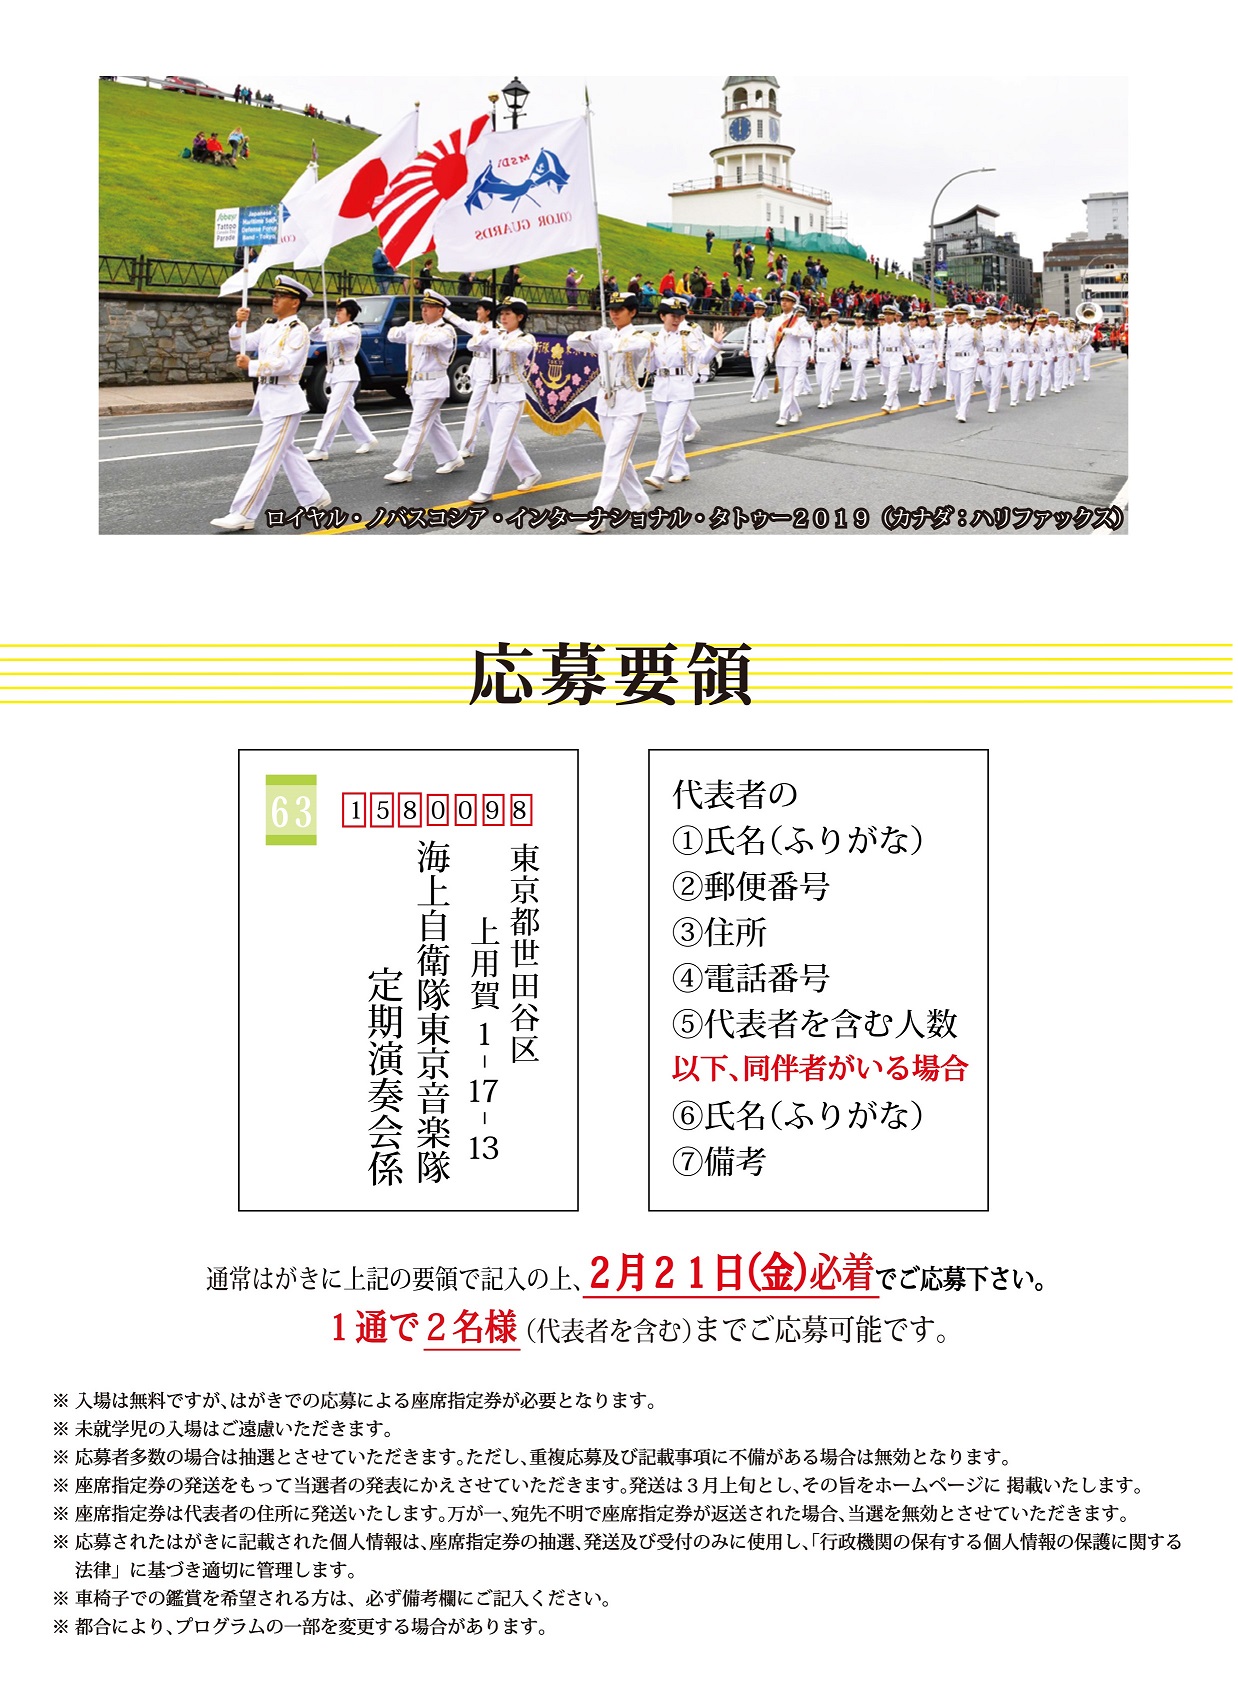 海上自衛隊 東京音楽隊 第59回定期演奏会：応募要項